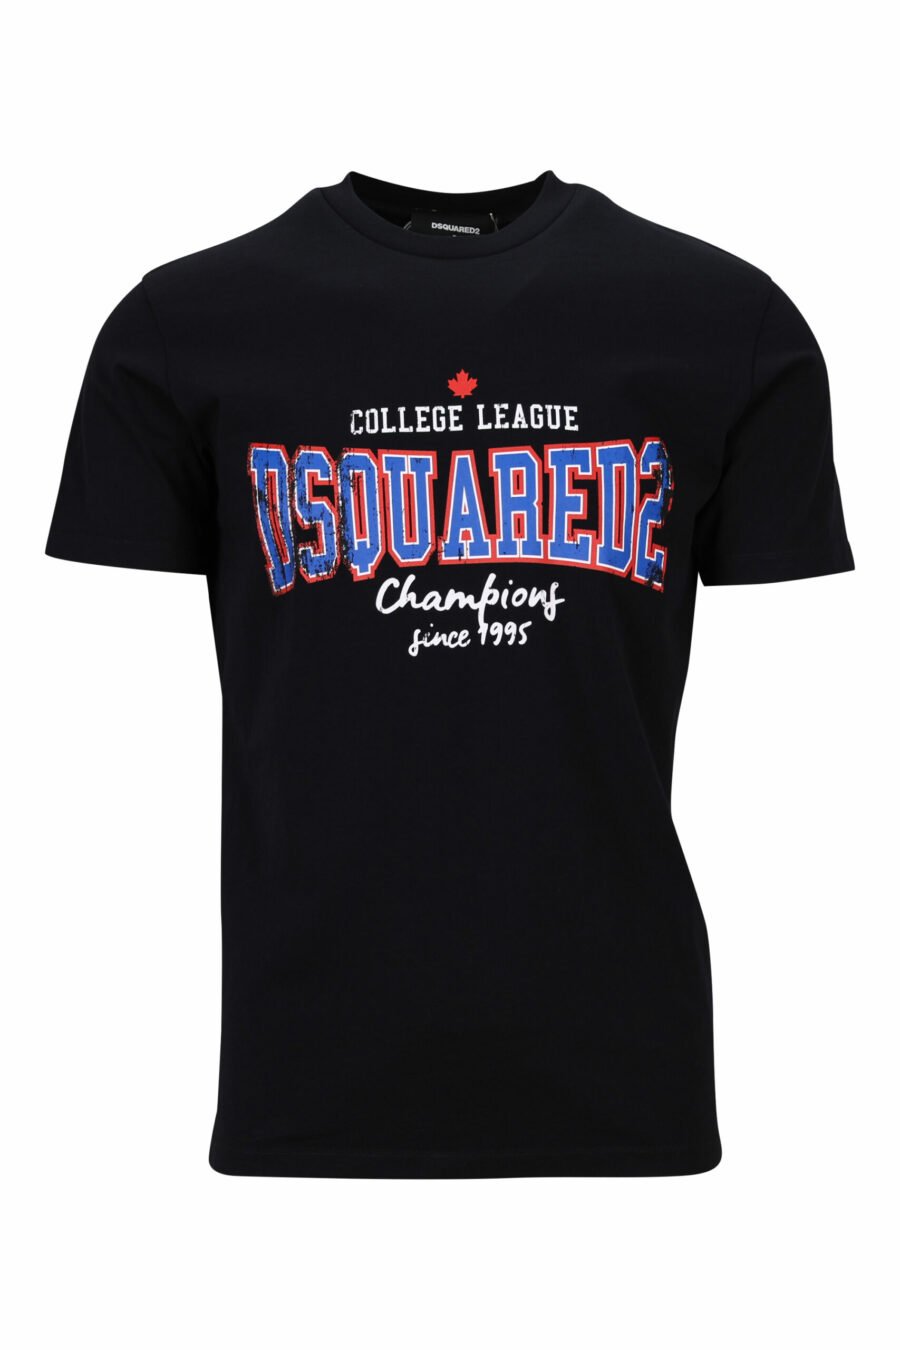 T-shirt preta com o maxilogo "collegue league" - 8054148504700 scaled